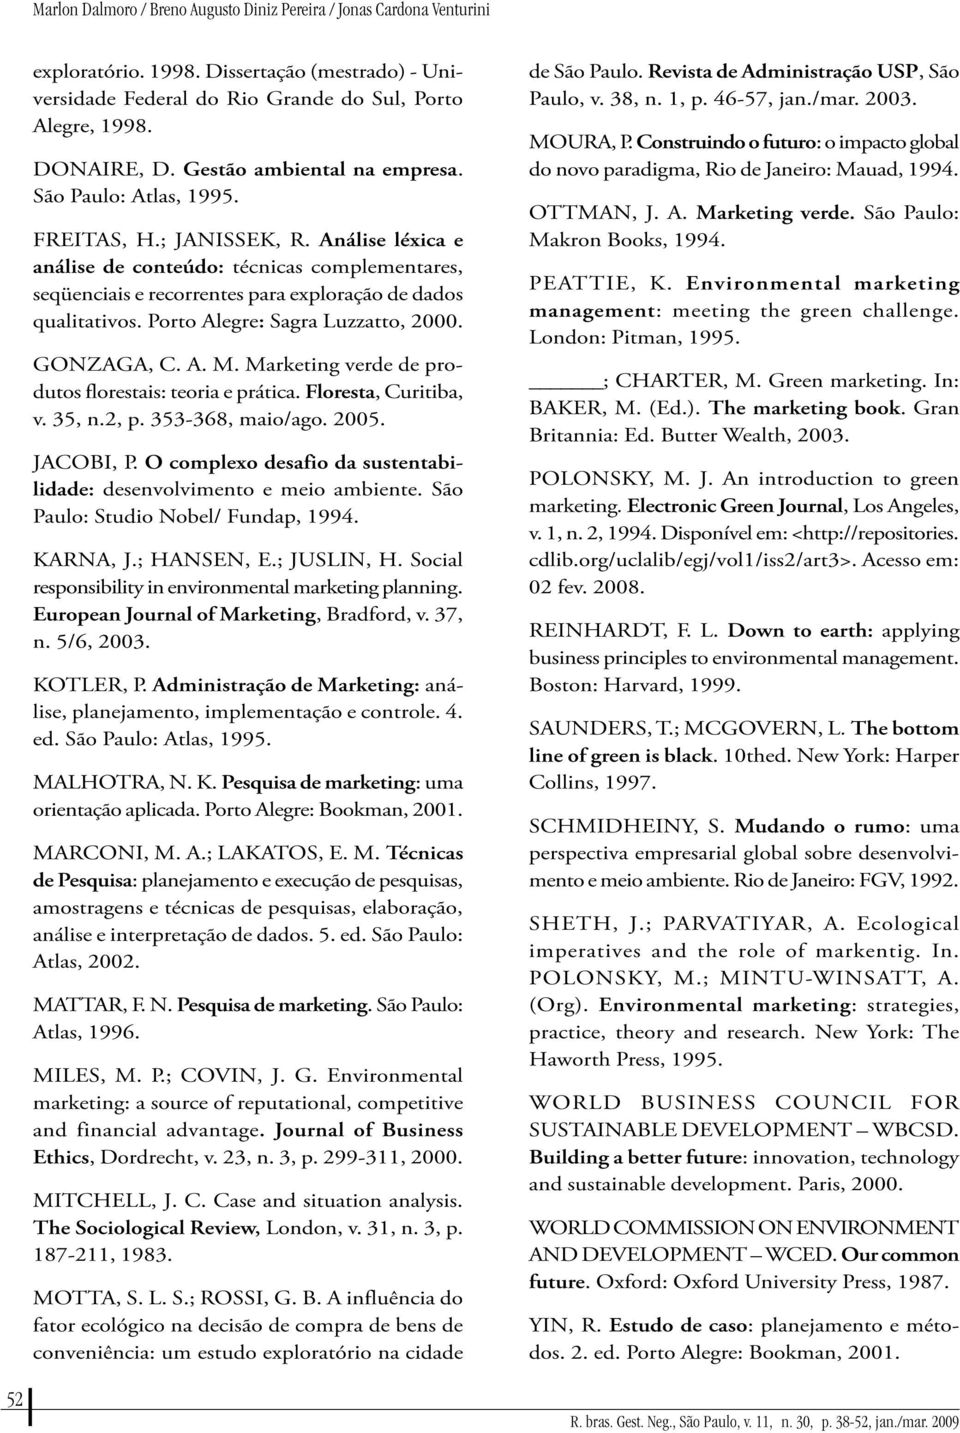 Porto Aegre: Sagra Luzzatto, 2000. GONZAGA, C. A. M. Marketing verde de produtos forestais: teoria e prática. Foresta, Curitiba, v. 35, n.2, p. 353-368, maio/ago. 2005. JACOBI, P.